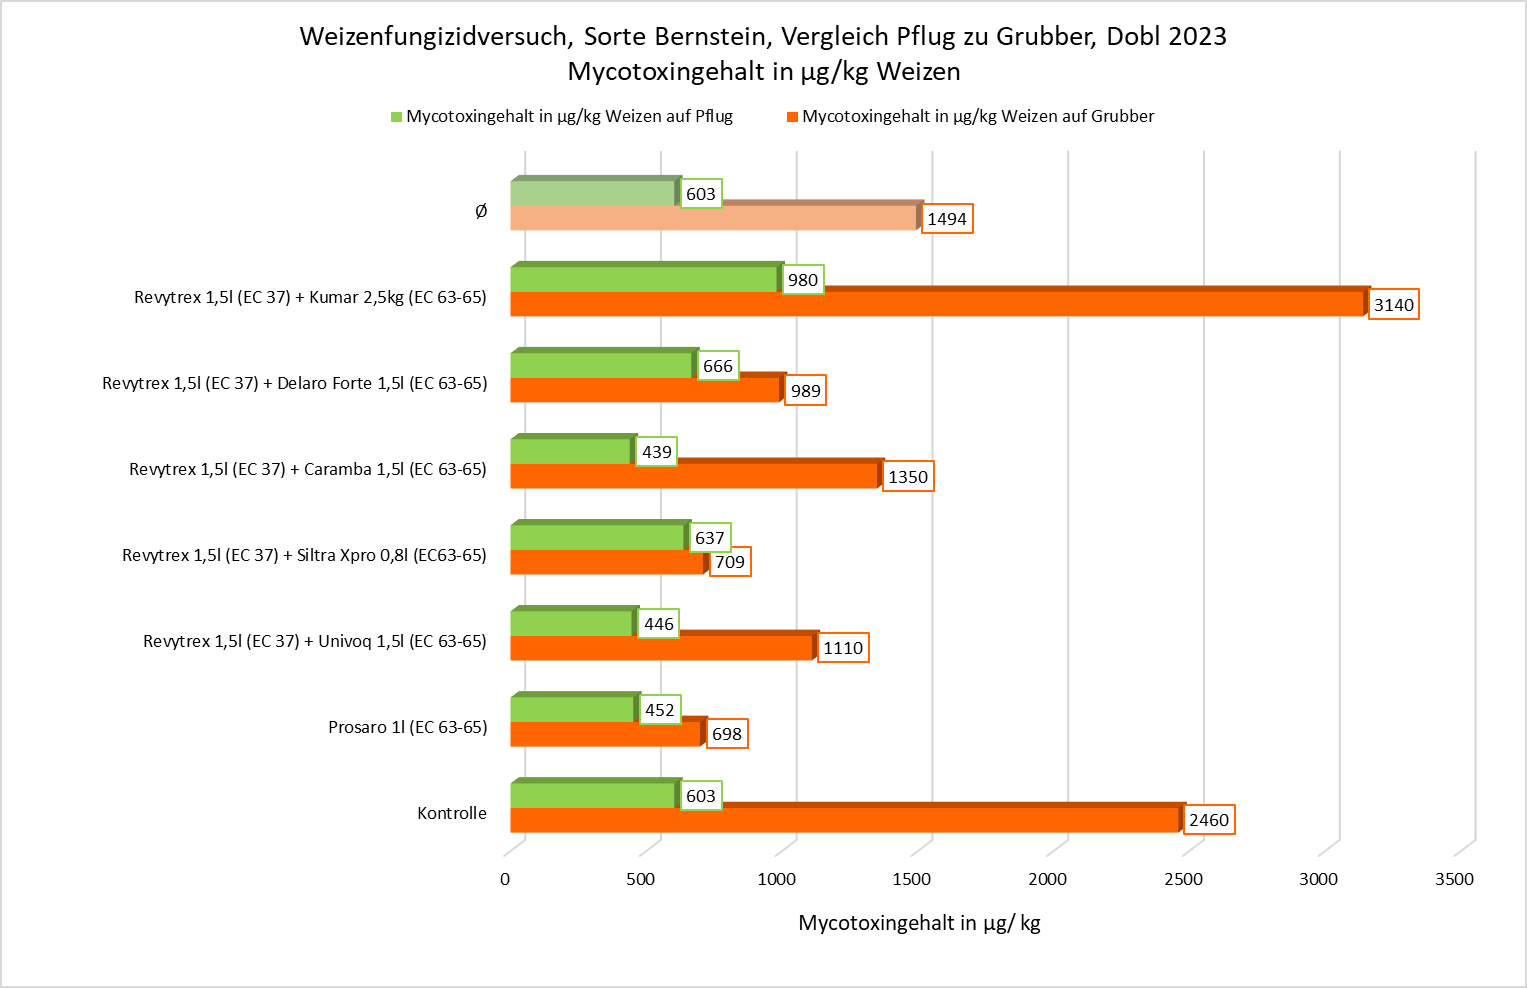 Weizenfungizidversuch Vergleich Pflug zu Grubber©LK Steiermark 2023.png